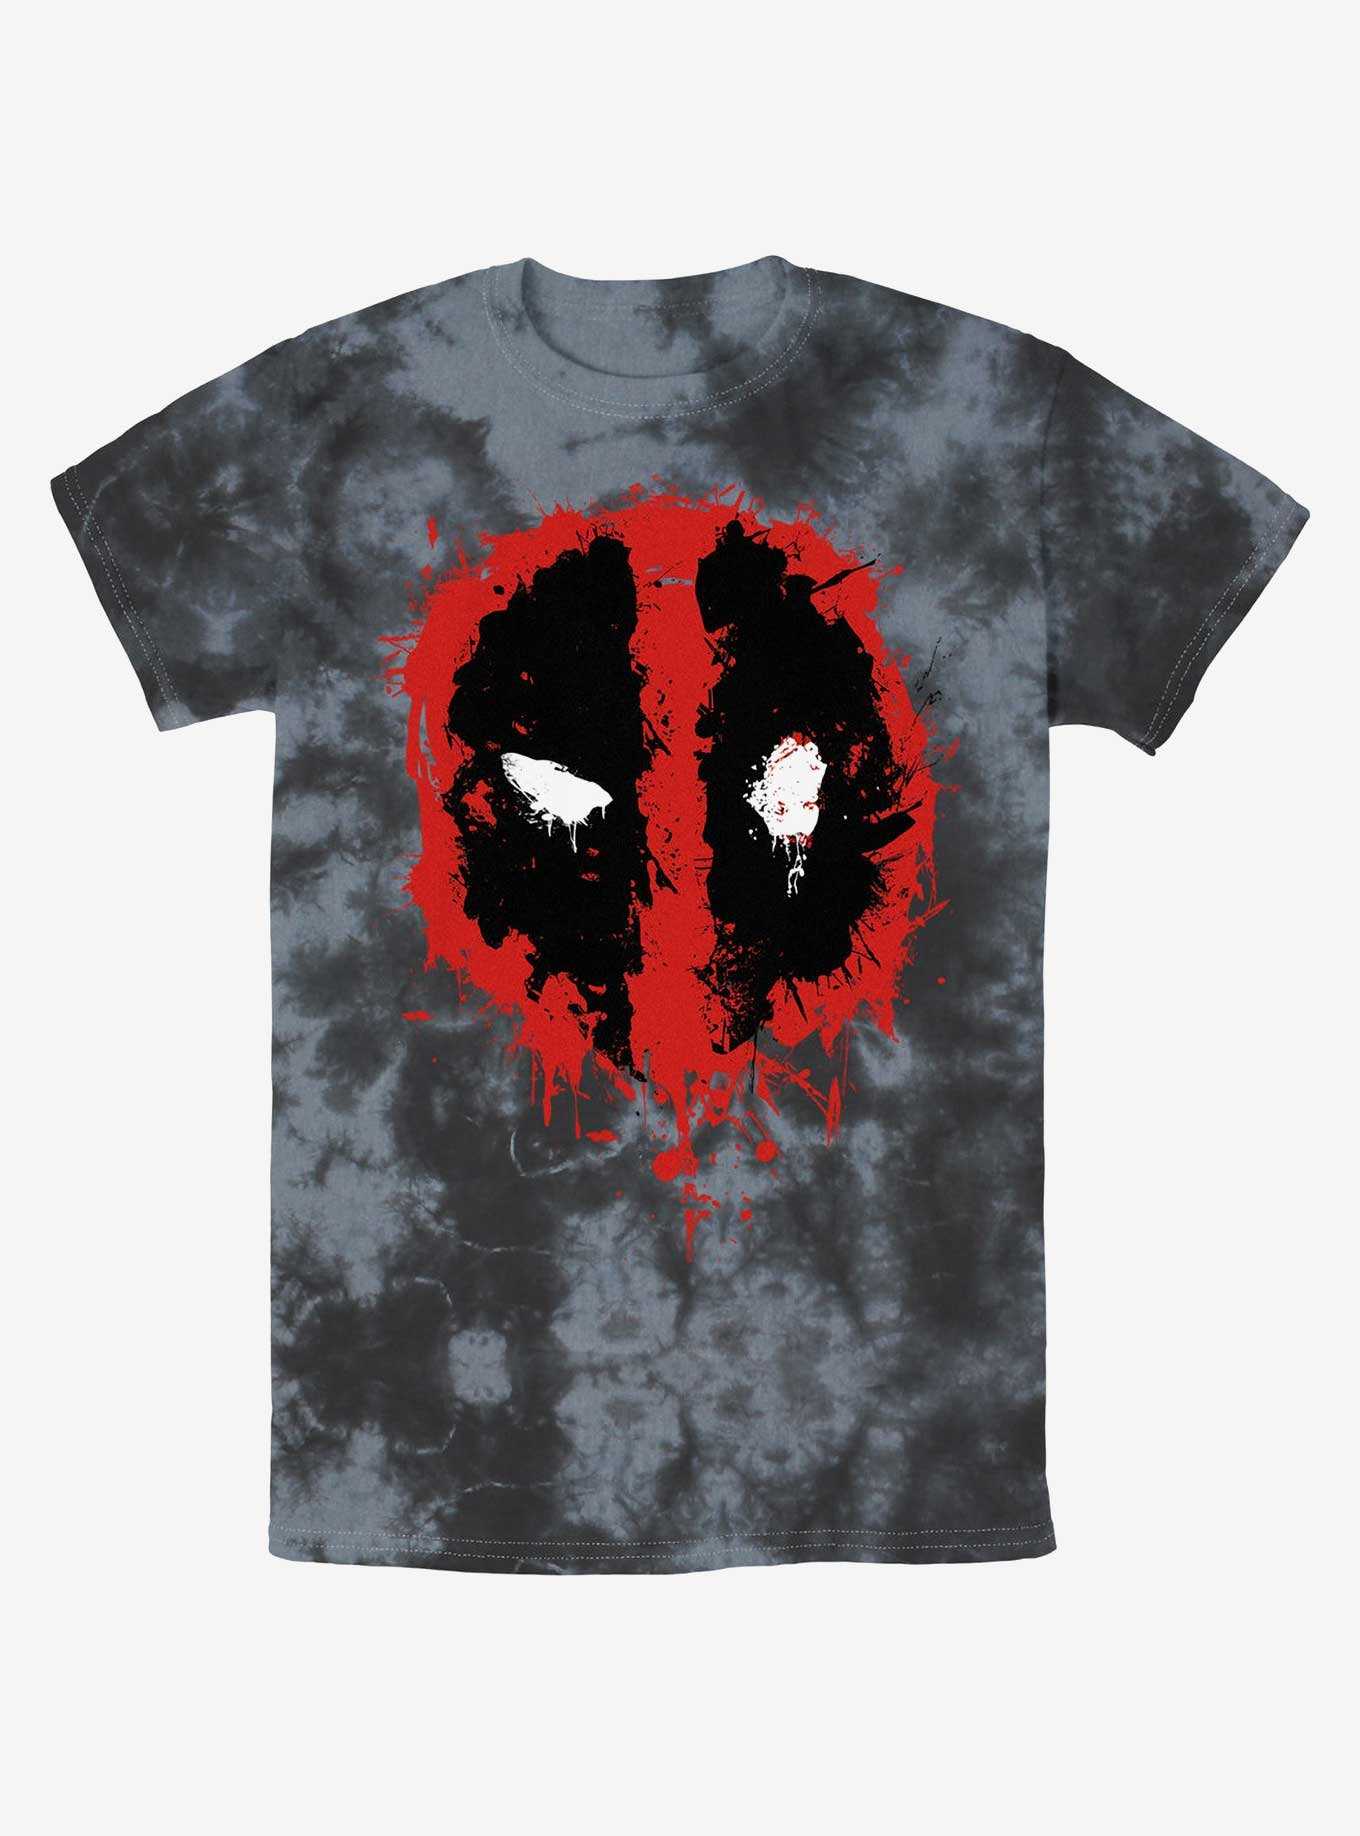 Marvel Deadpool Splatter Dead Eye Tie-Dye T-Shirt, , hi-res